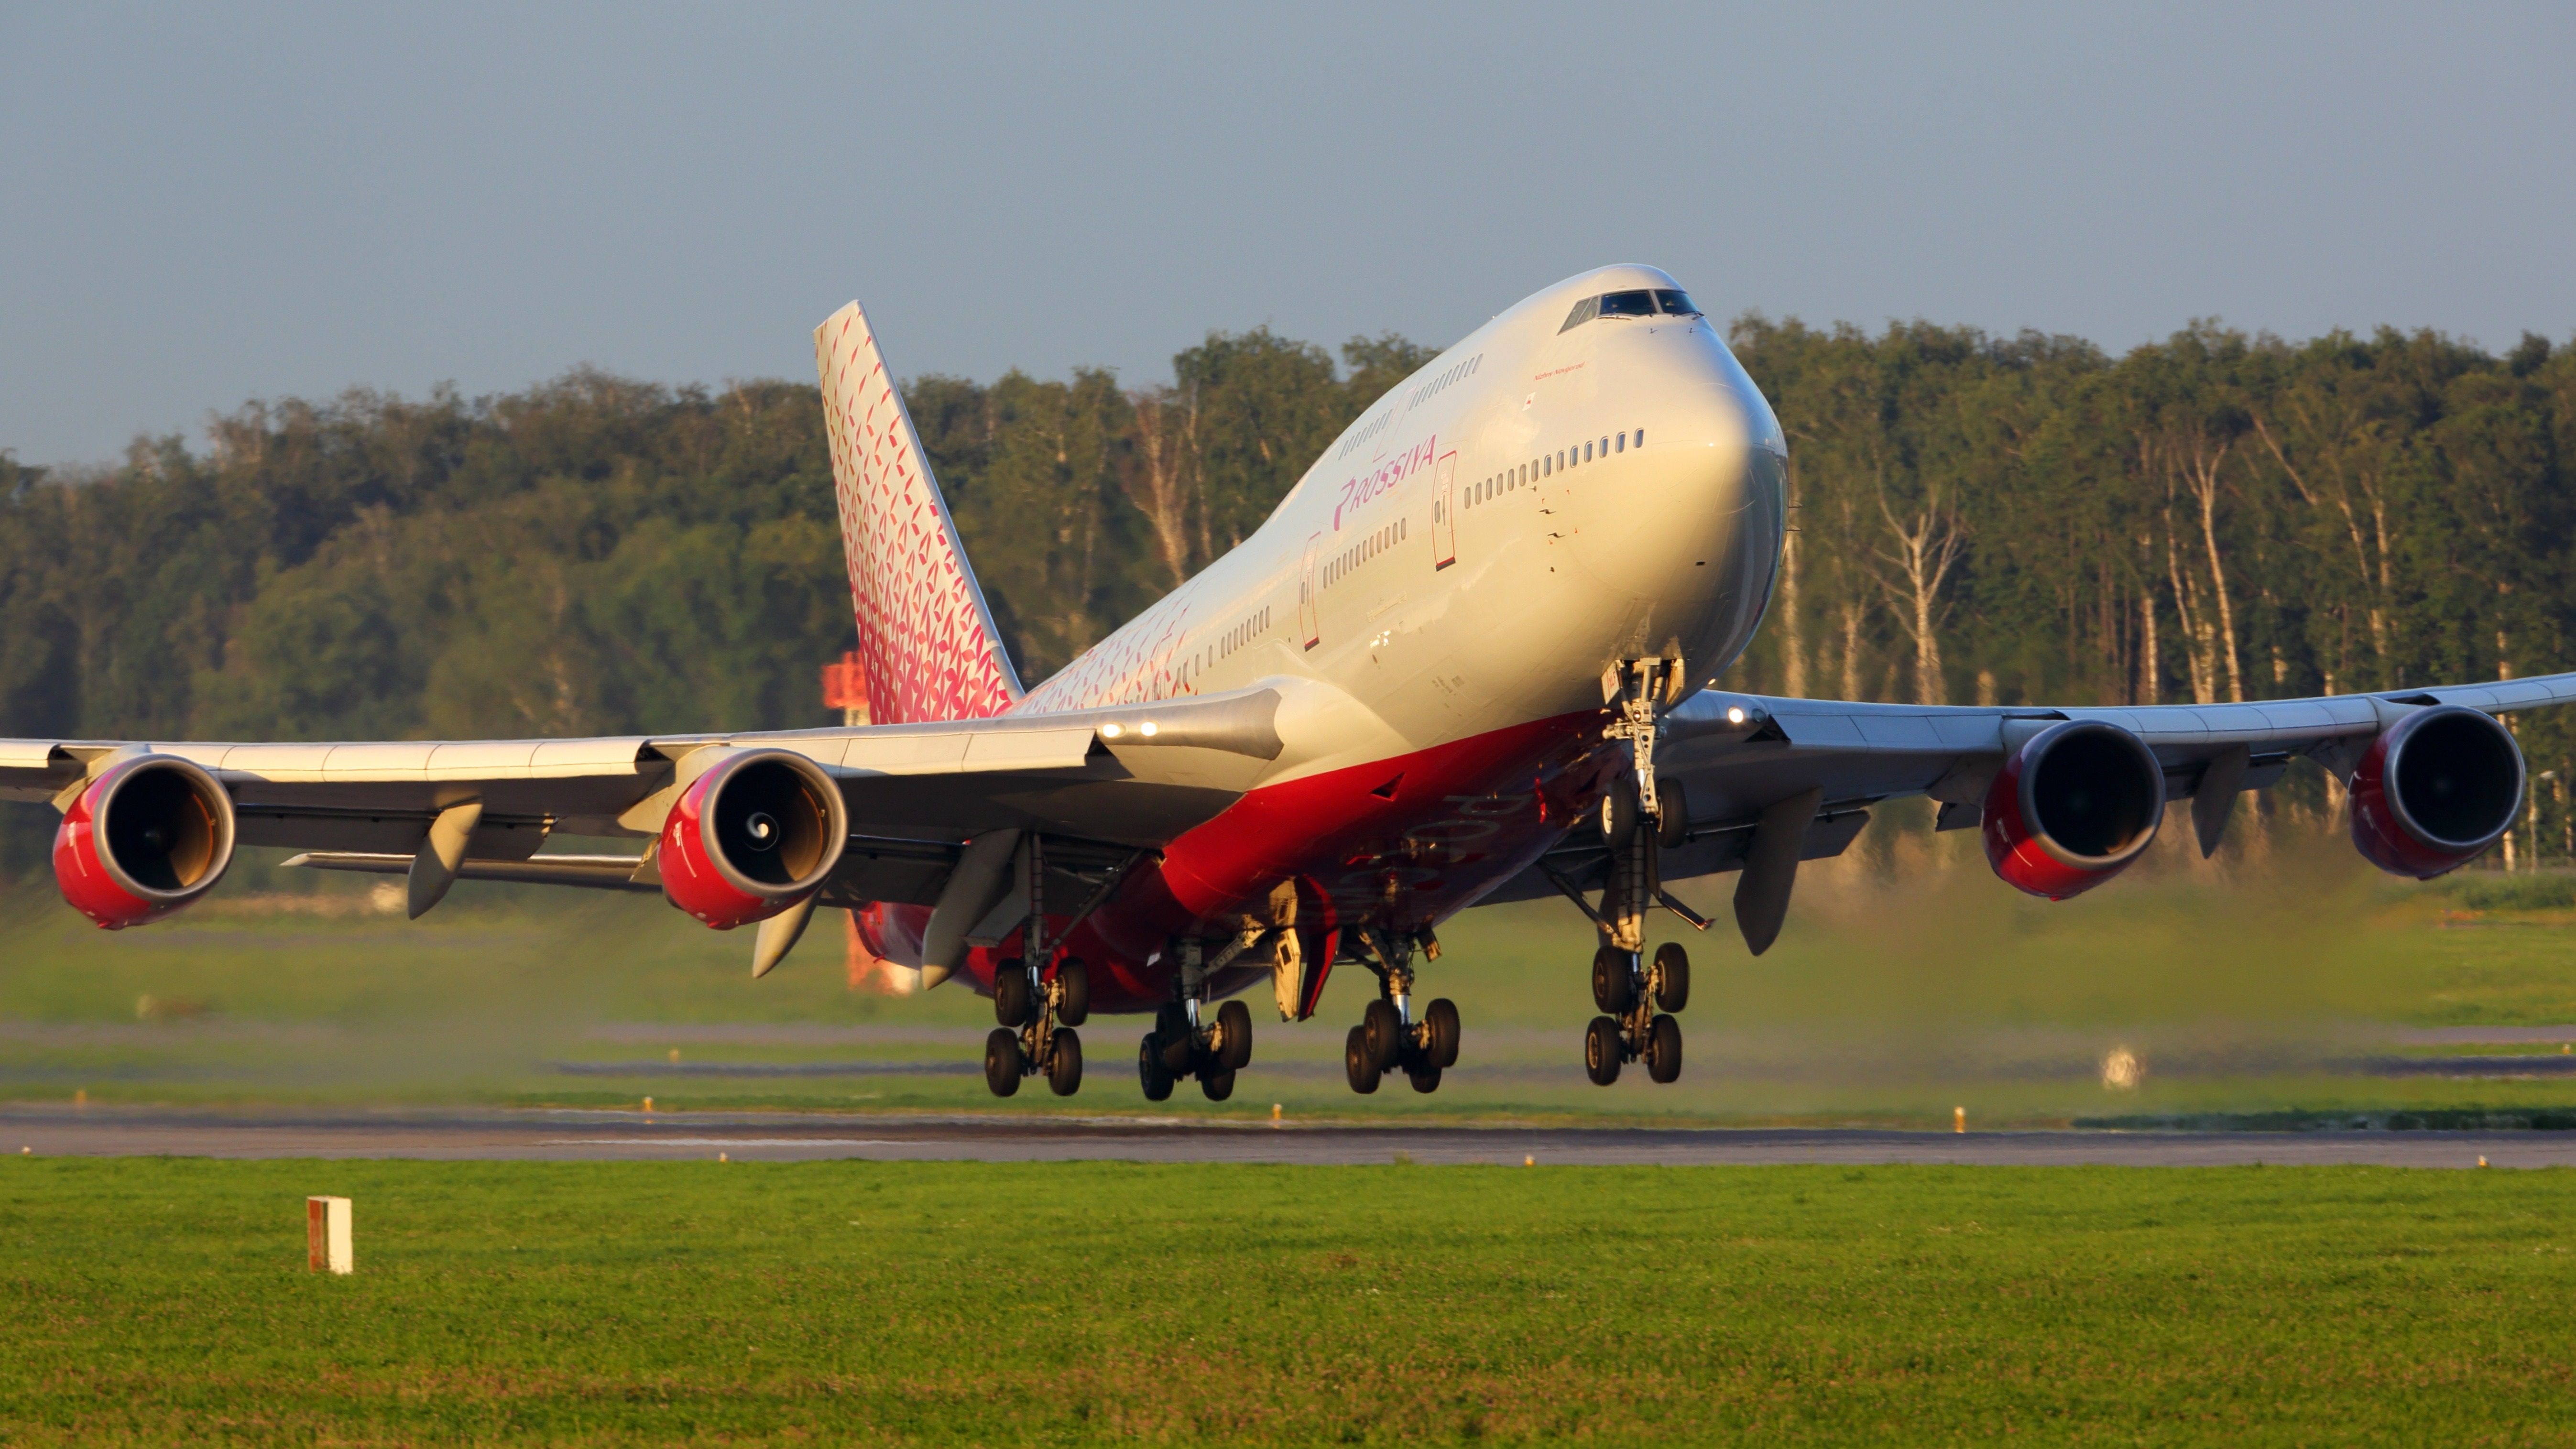 Rossiya 747-400 landing